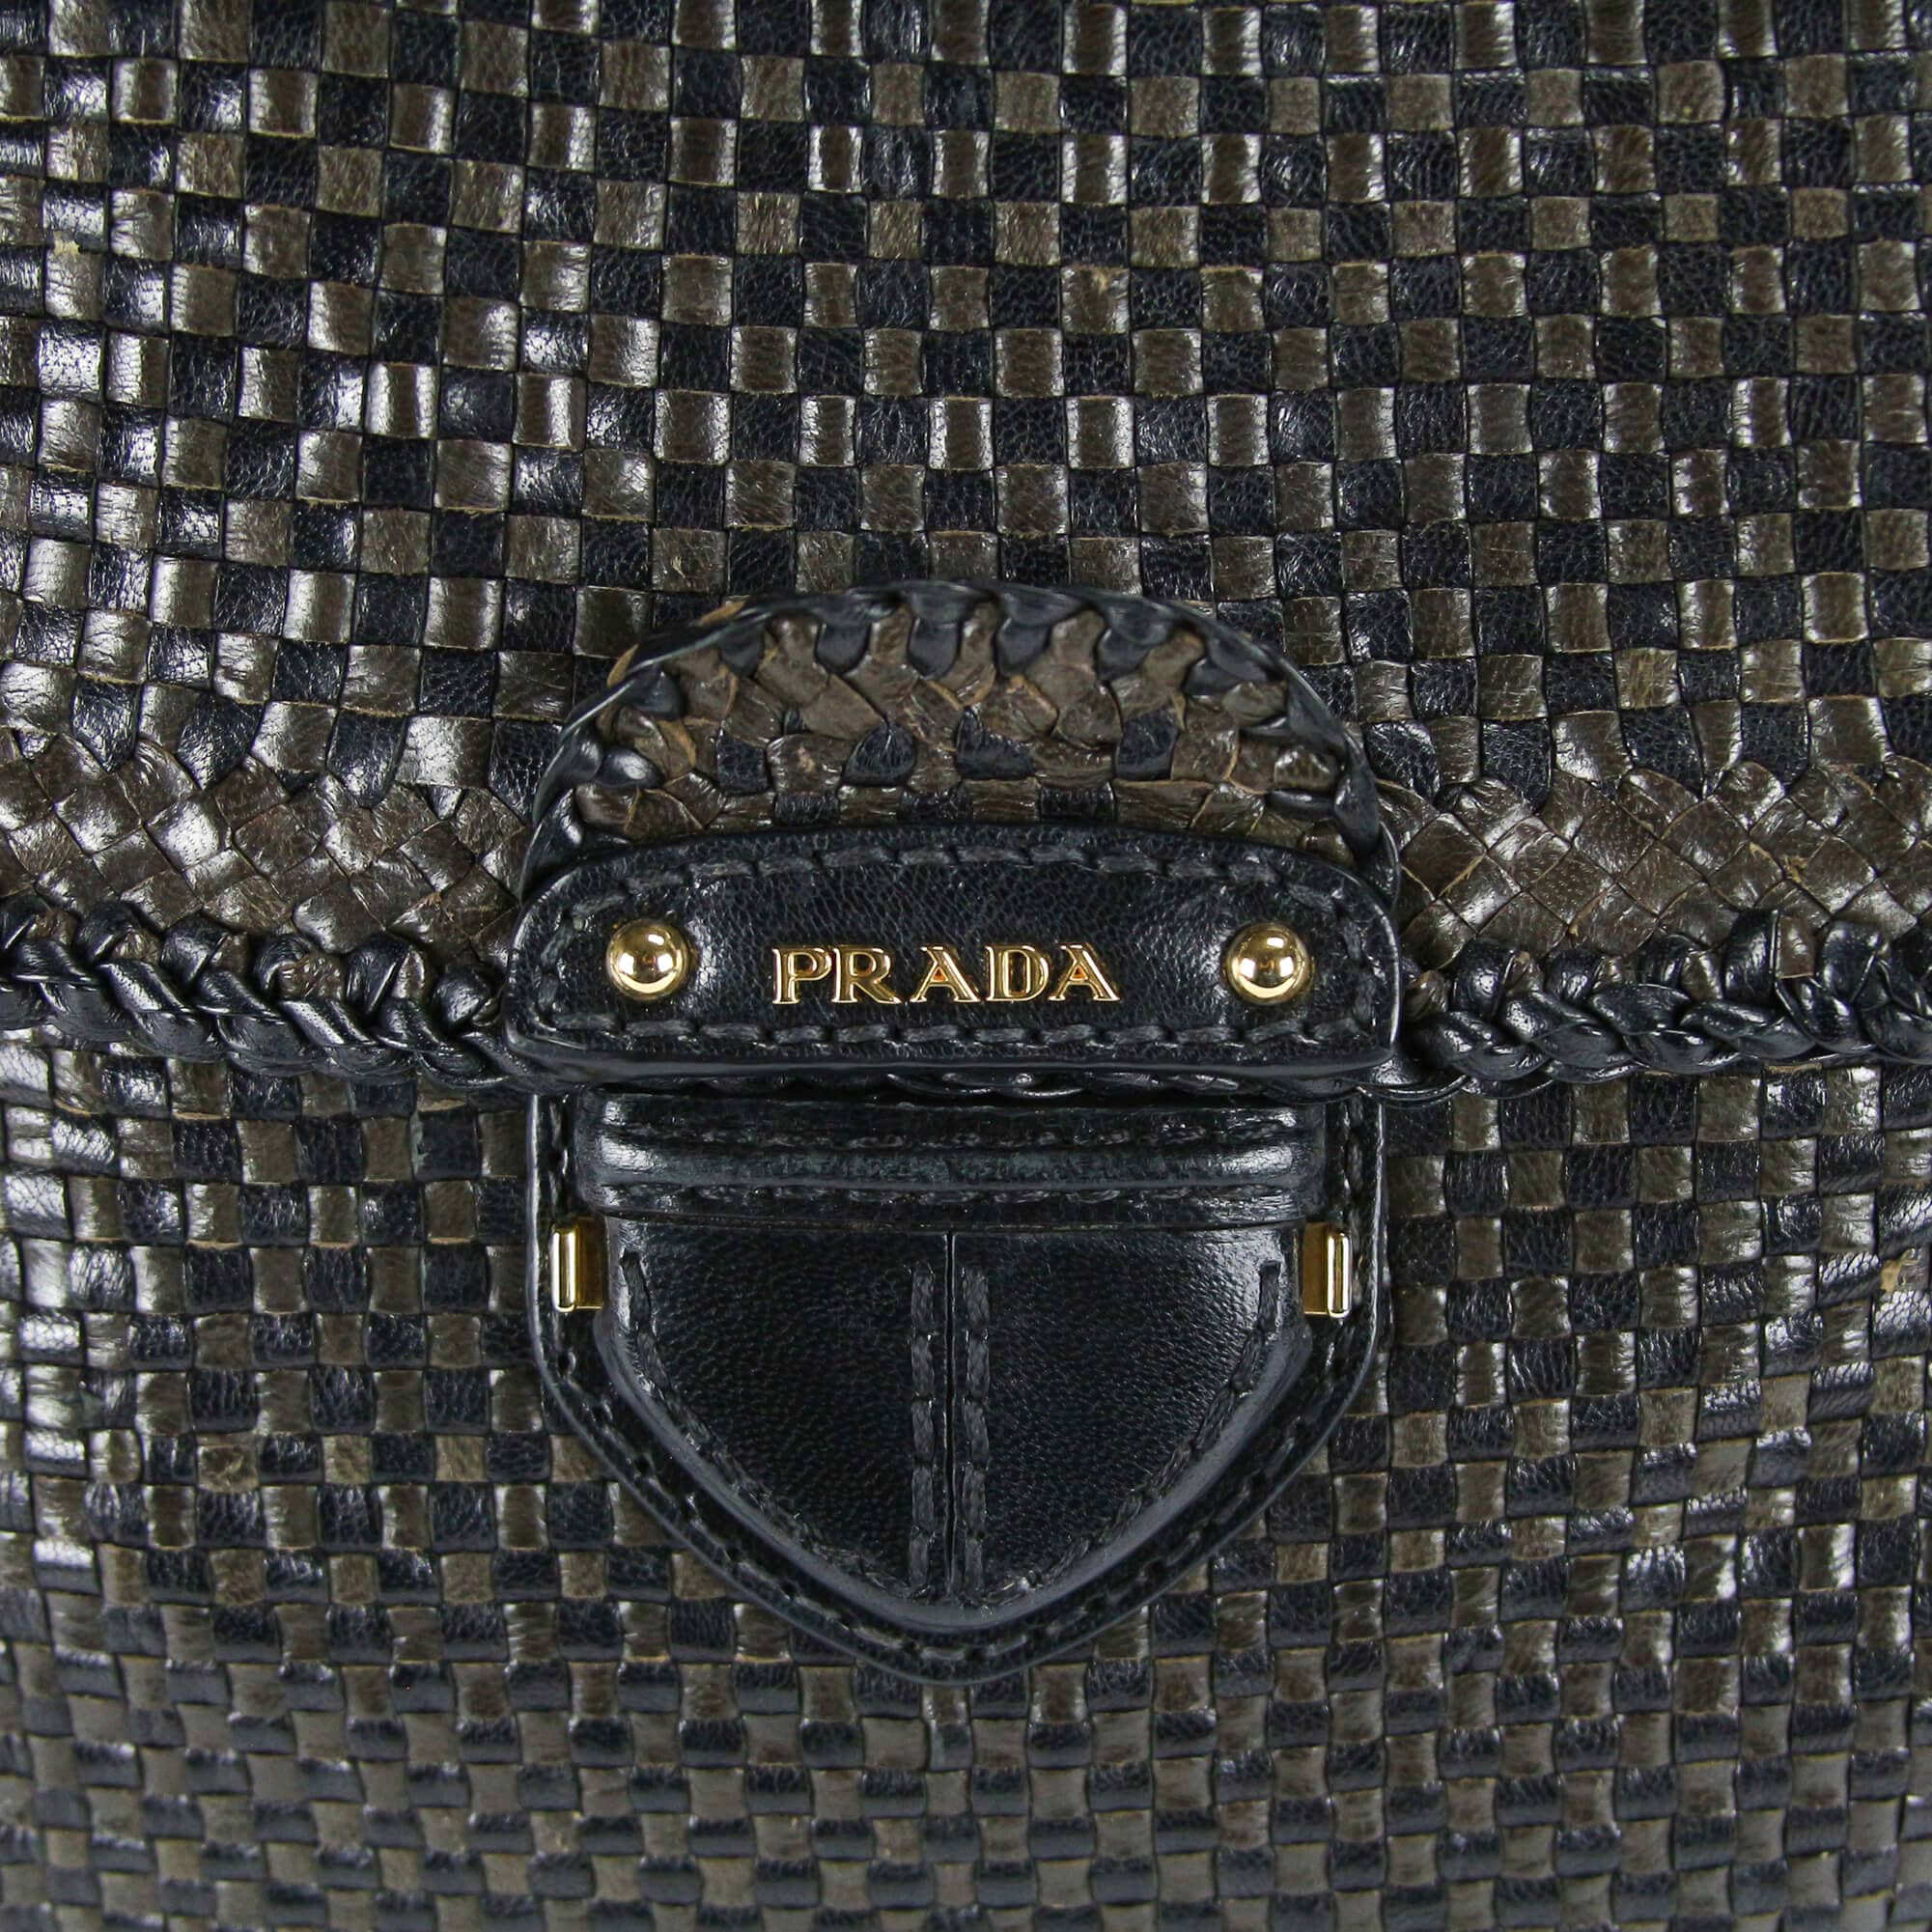 Prada Madras Leather Woven Slim Shoulder Bag Clutch Wristlet in Navy Blue  Goatskin - SOLD